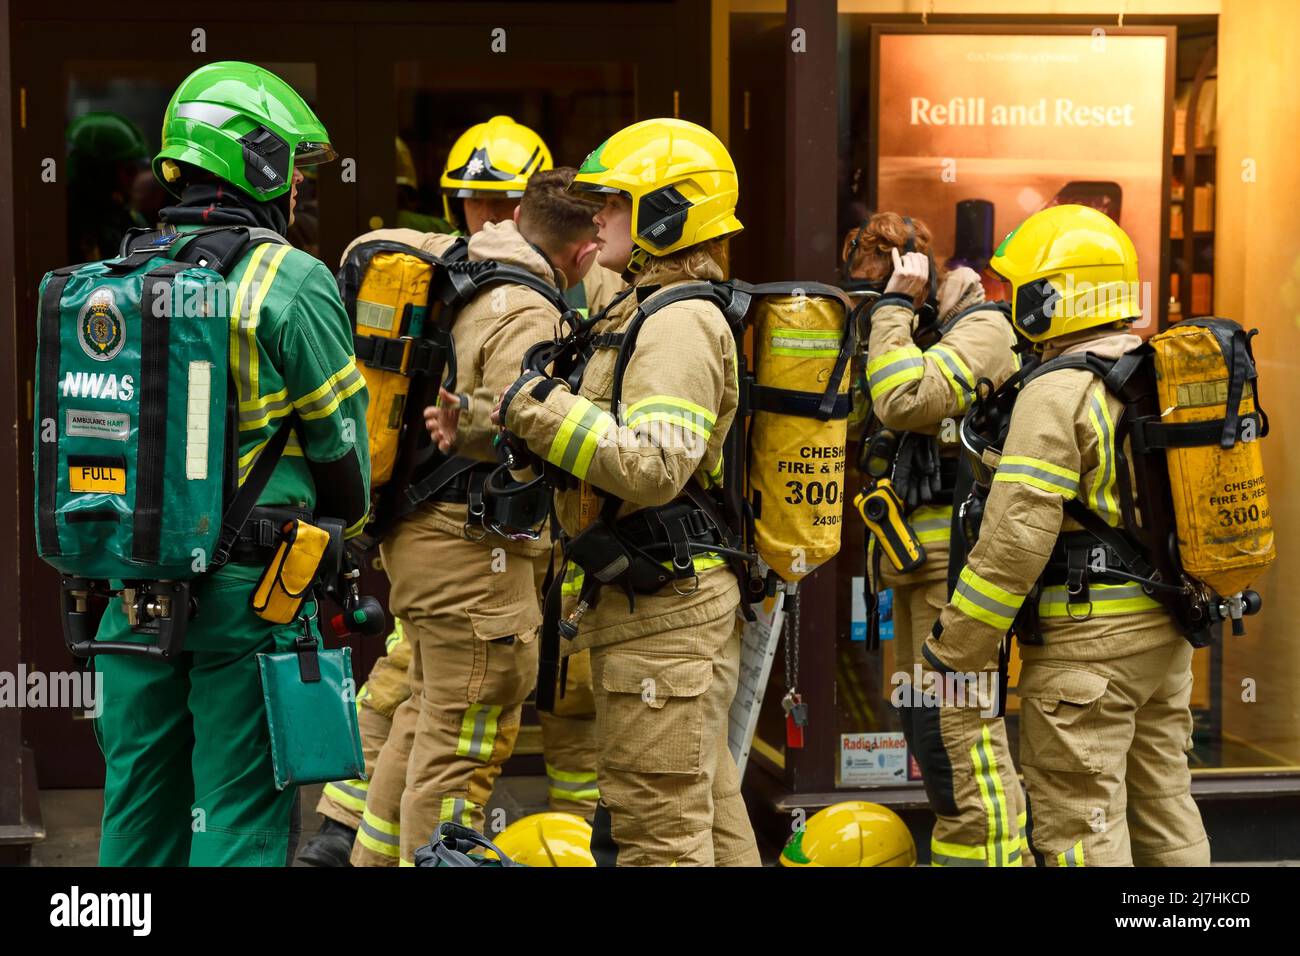 Deva Flame exercice de formation multi-agences dirigé par Cheshire Fire and Rescue Service qui a lieu à la discothèque Rosies Northgate Street Chester UK Banque D'Images